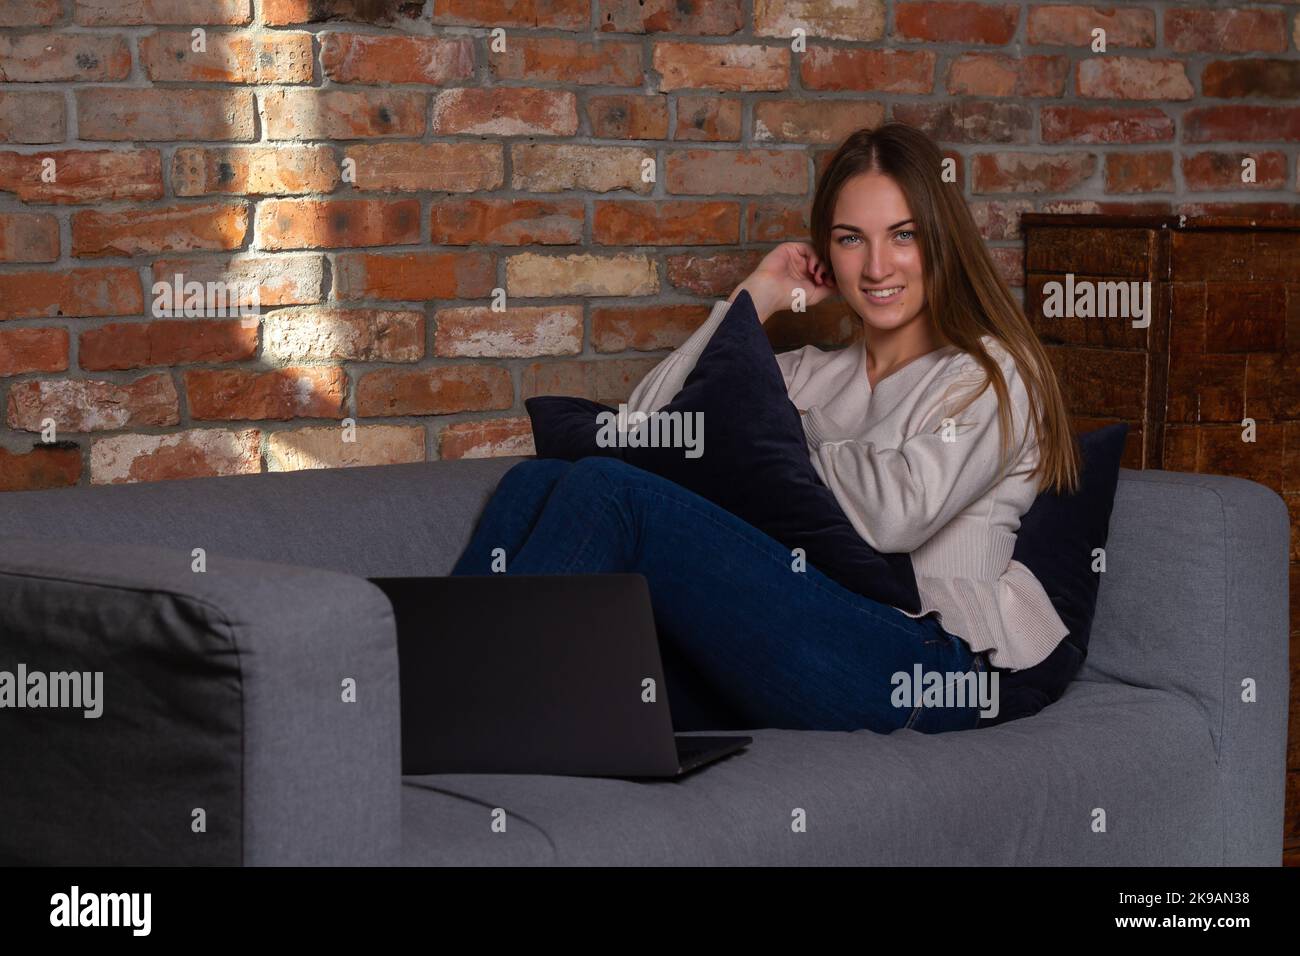 Donna sorridente in un maglione bianco seduto sul divano con un notebook davanti a lei Foto Stock